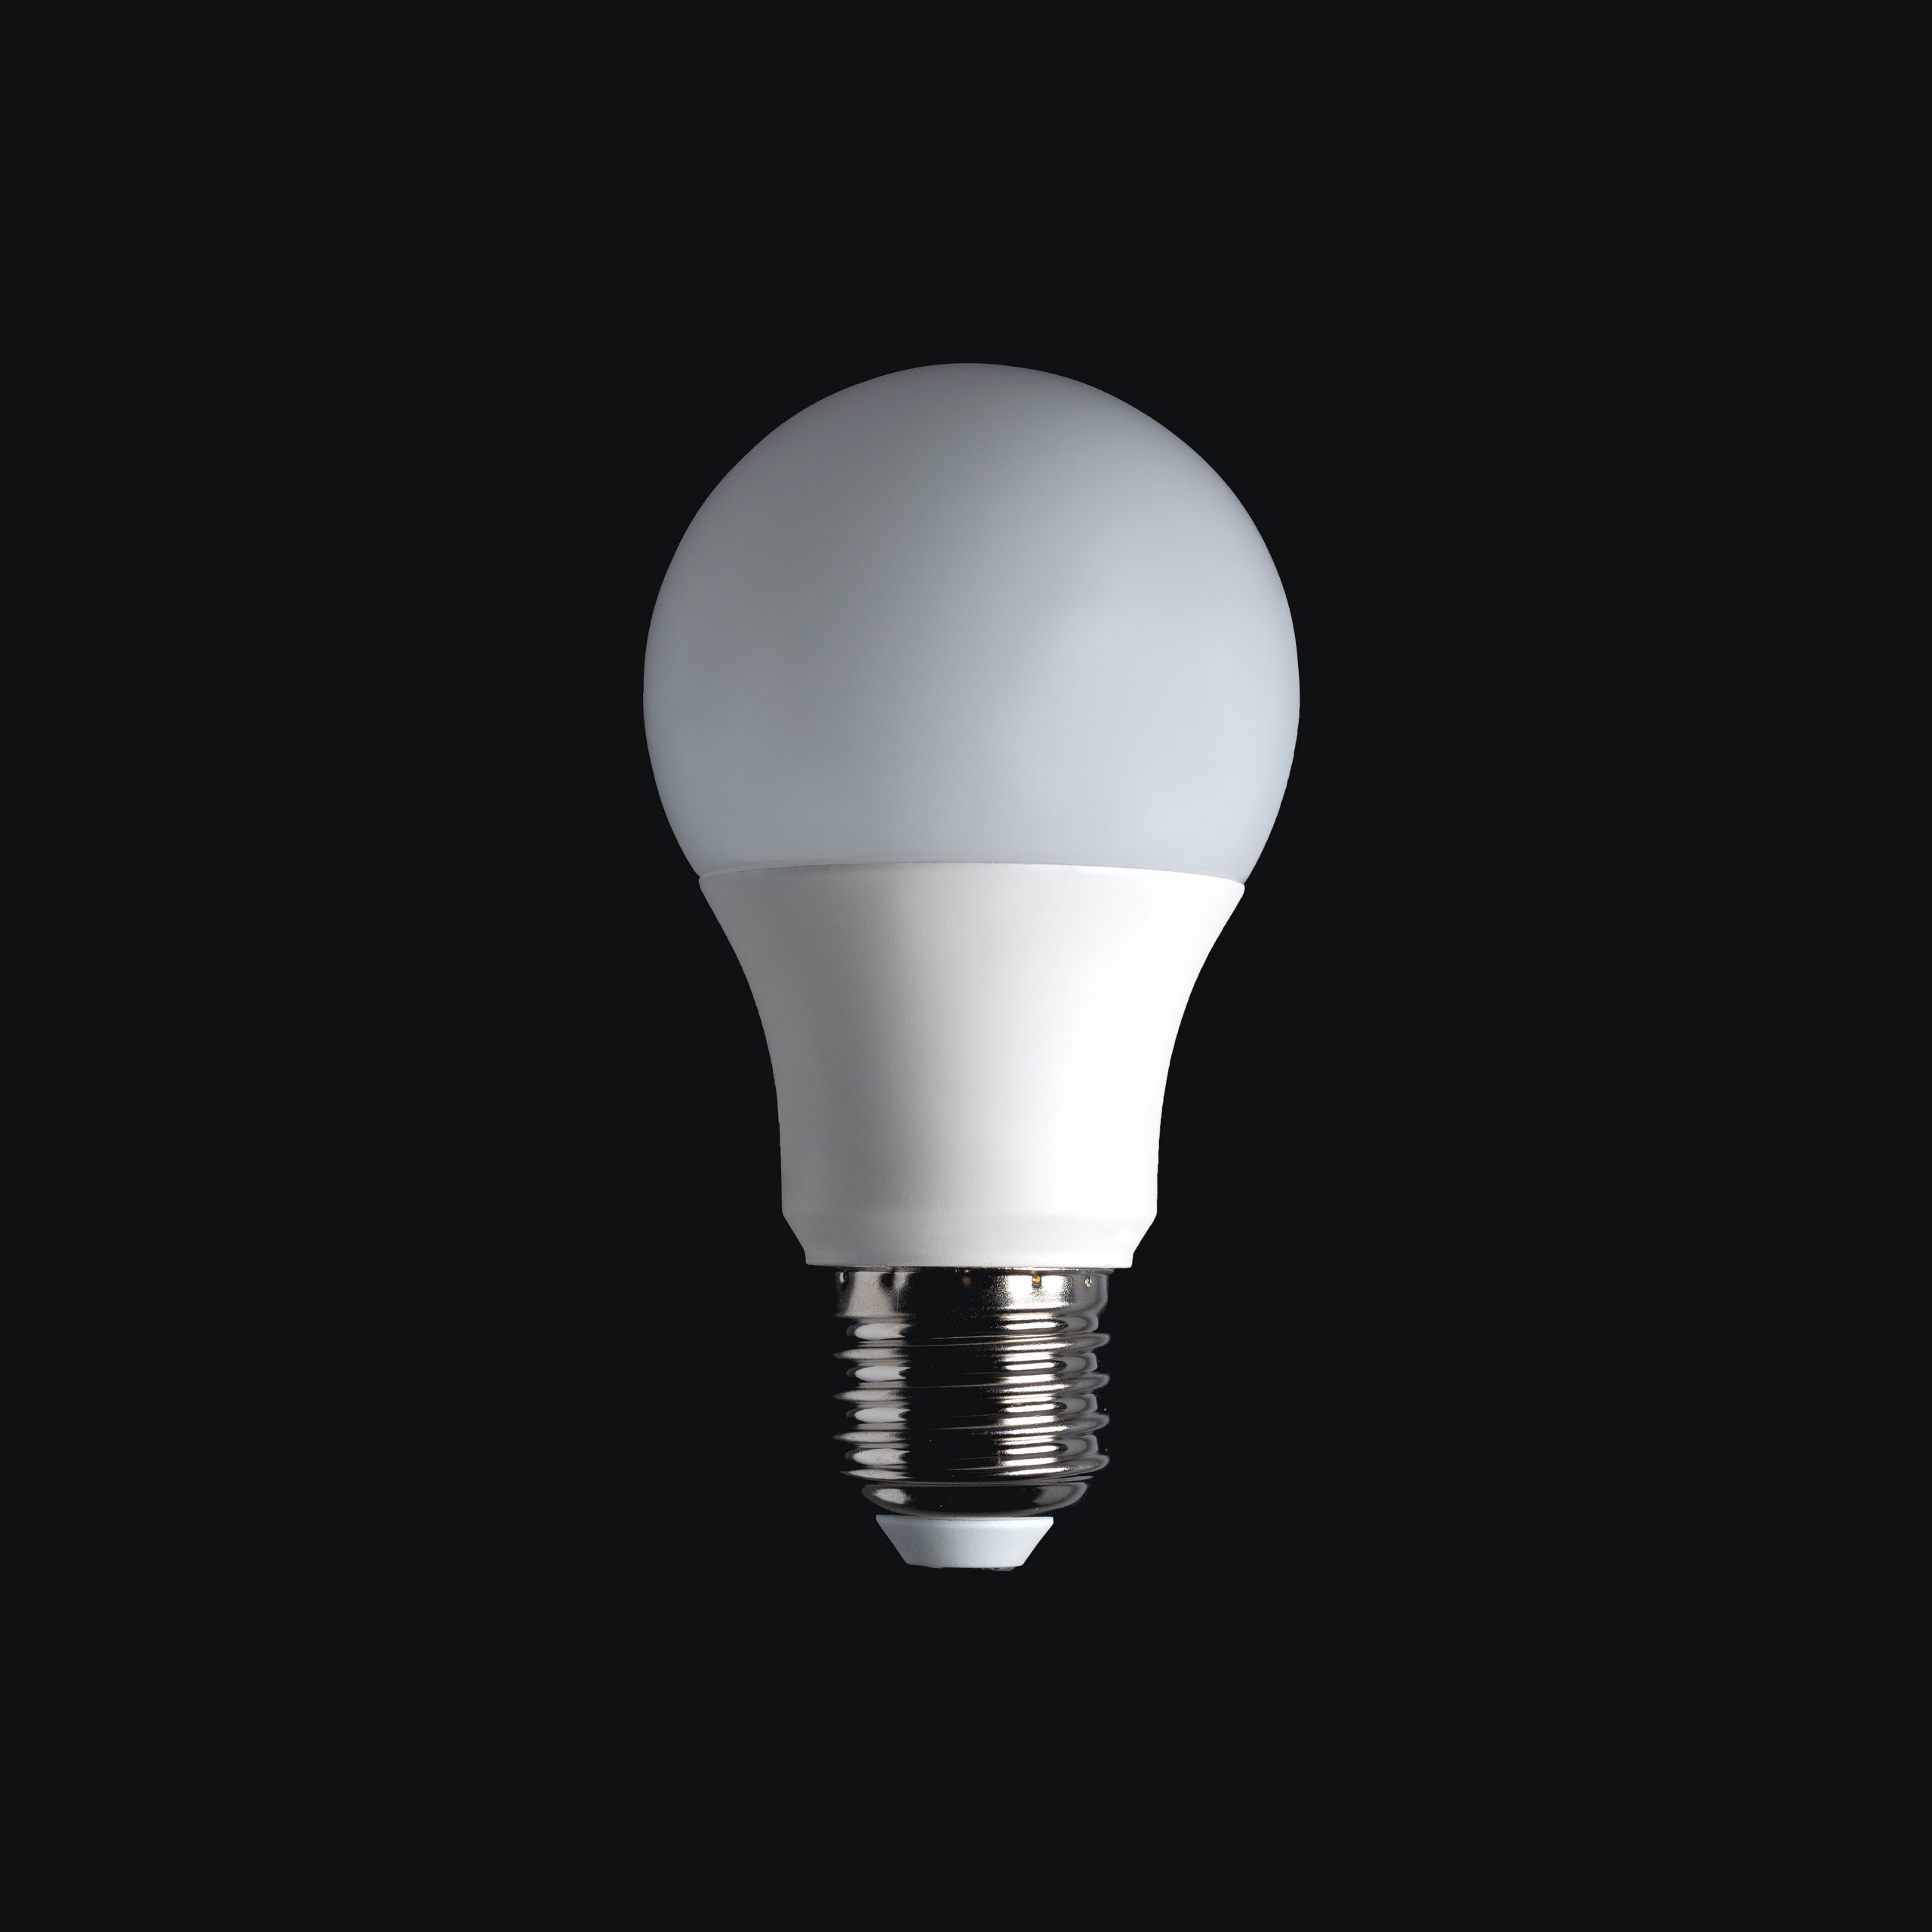 LED Lightbulb lighting